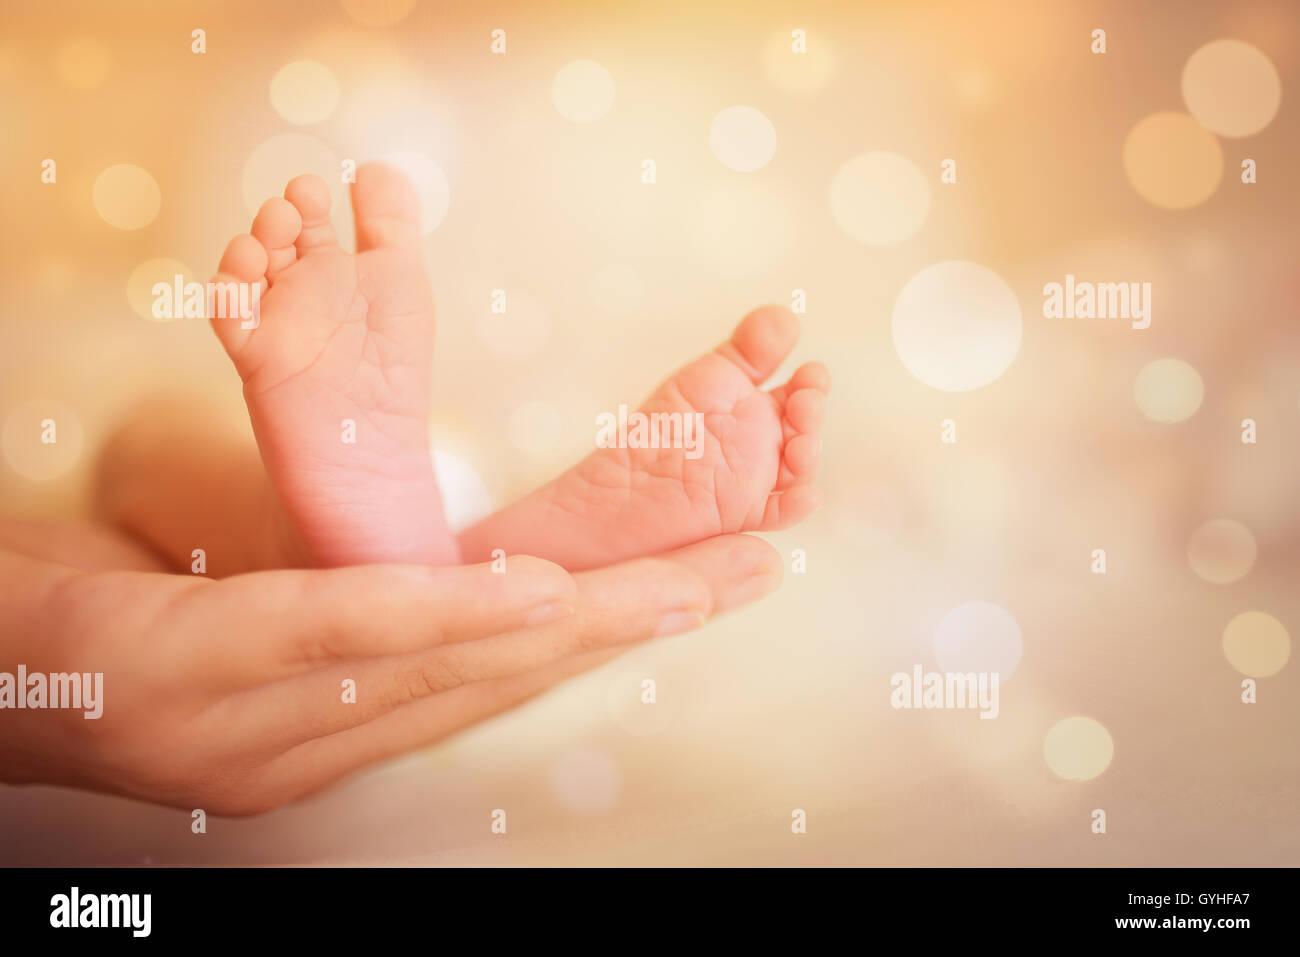 Madre mantenga feets de bebé recién nacido Foto de stock